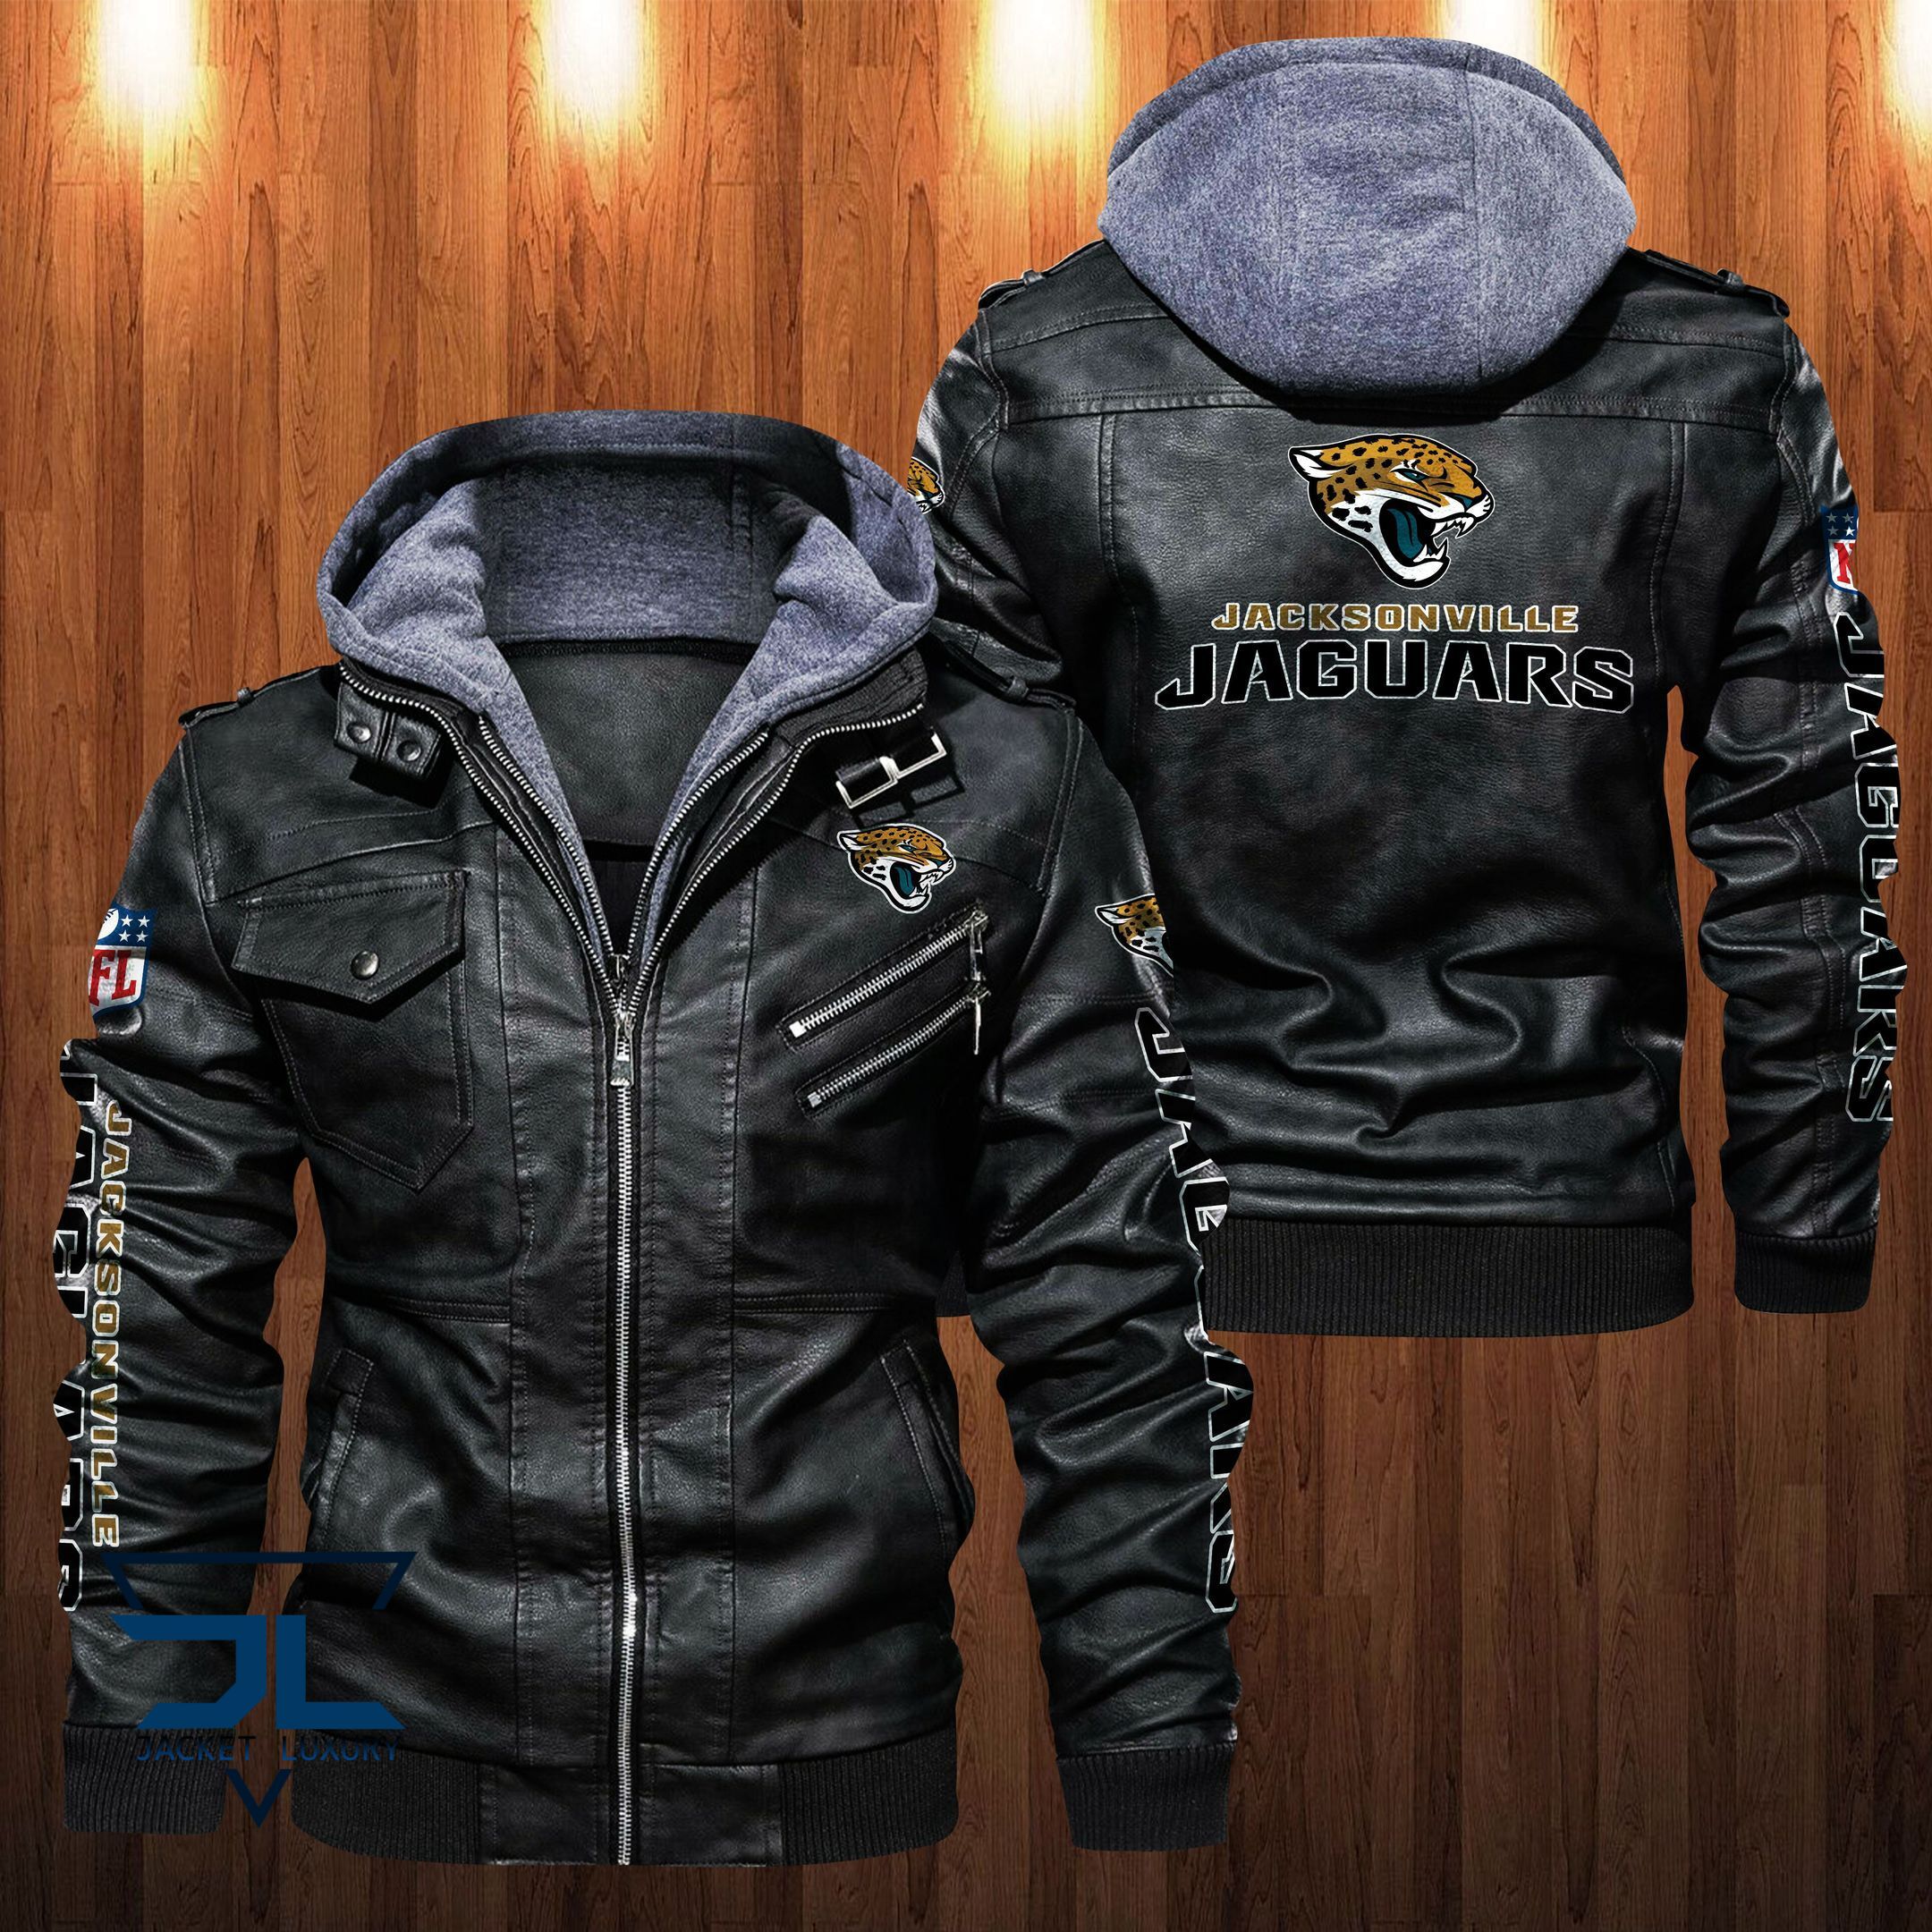 Get the best jackets under $100! 189